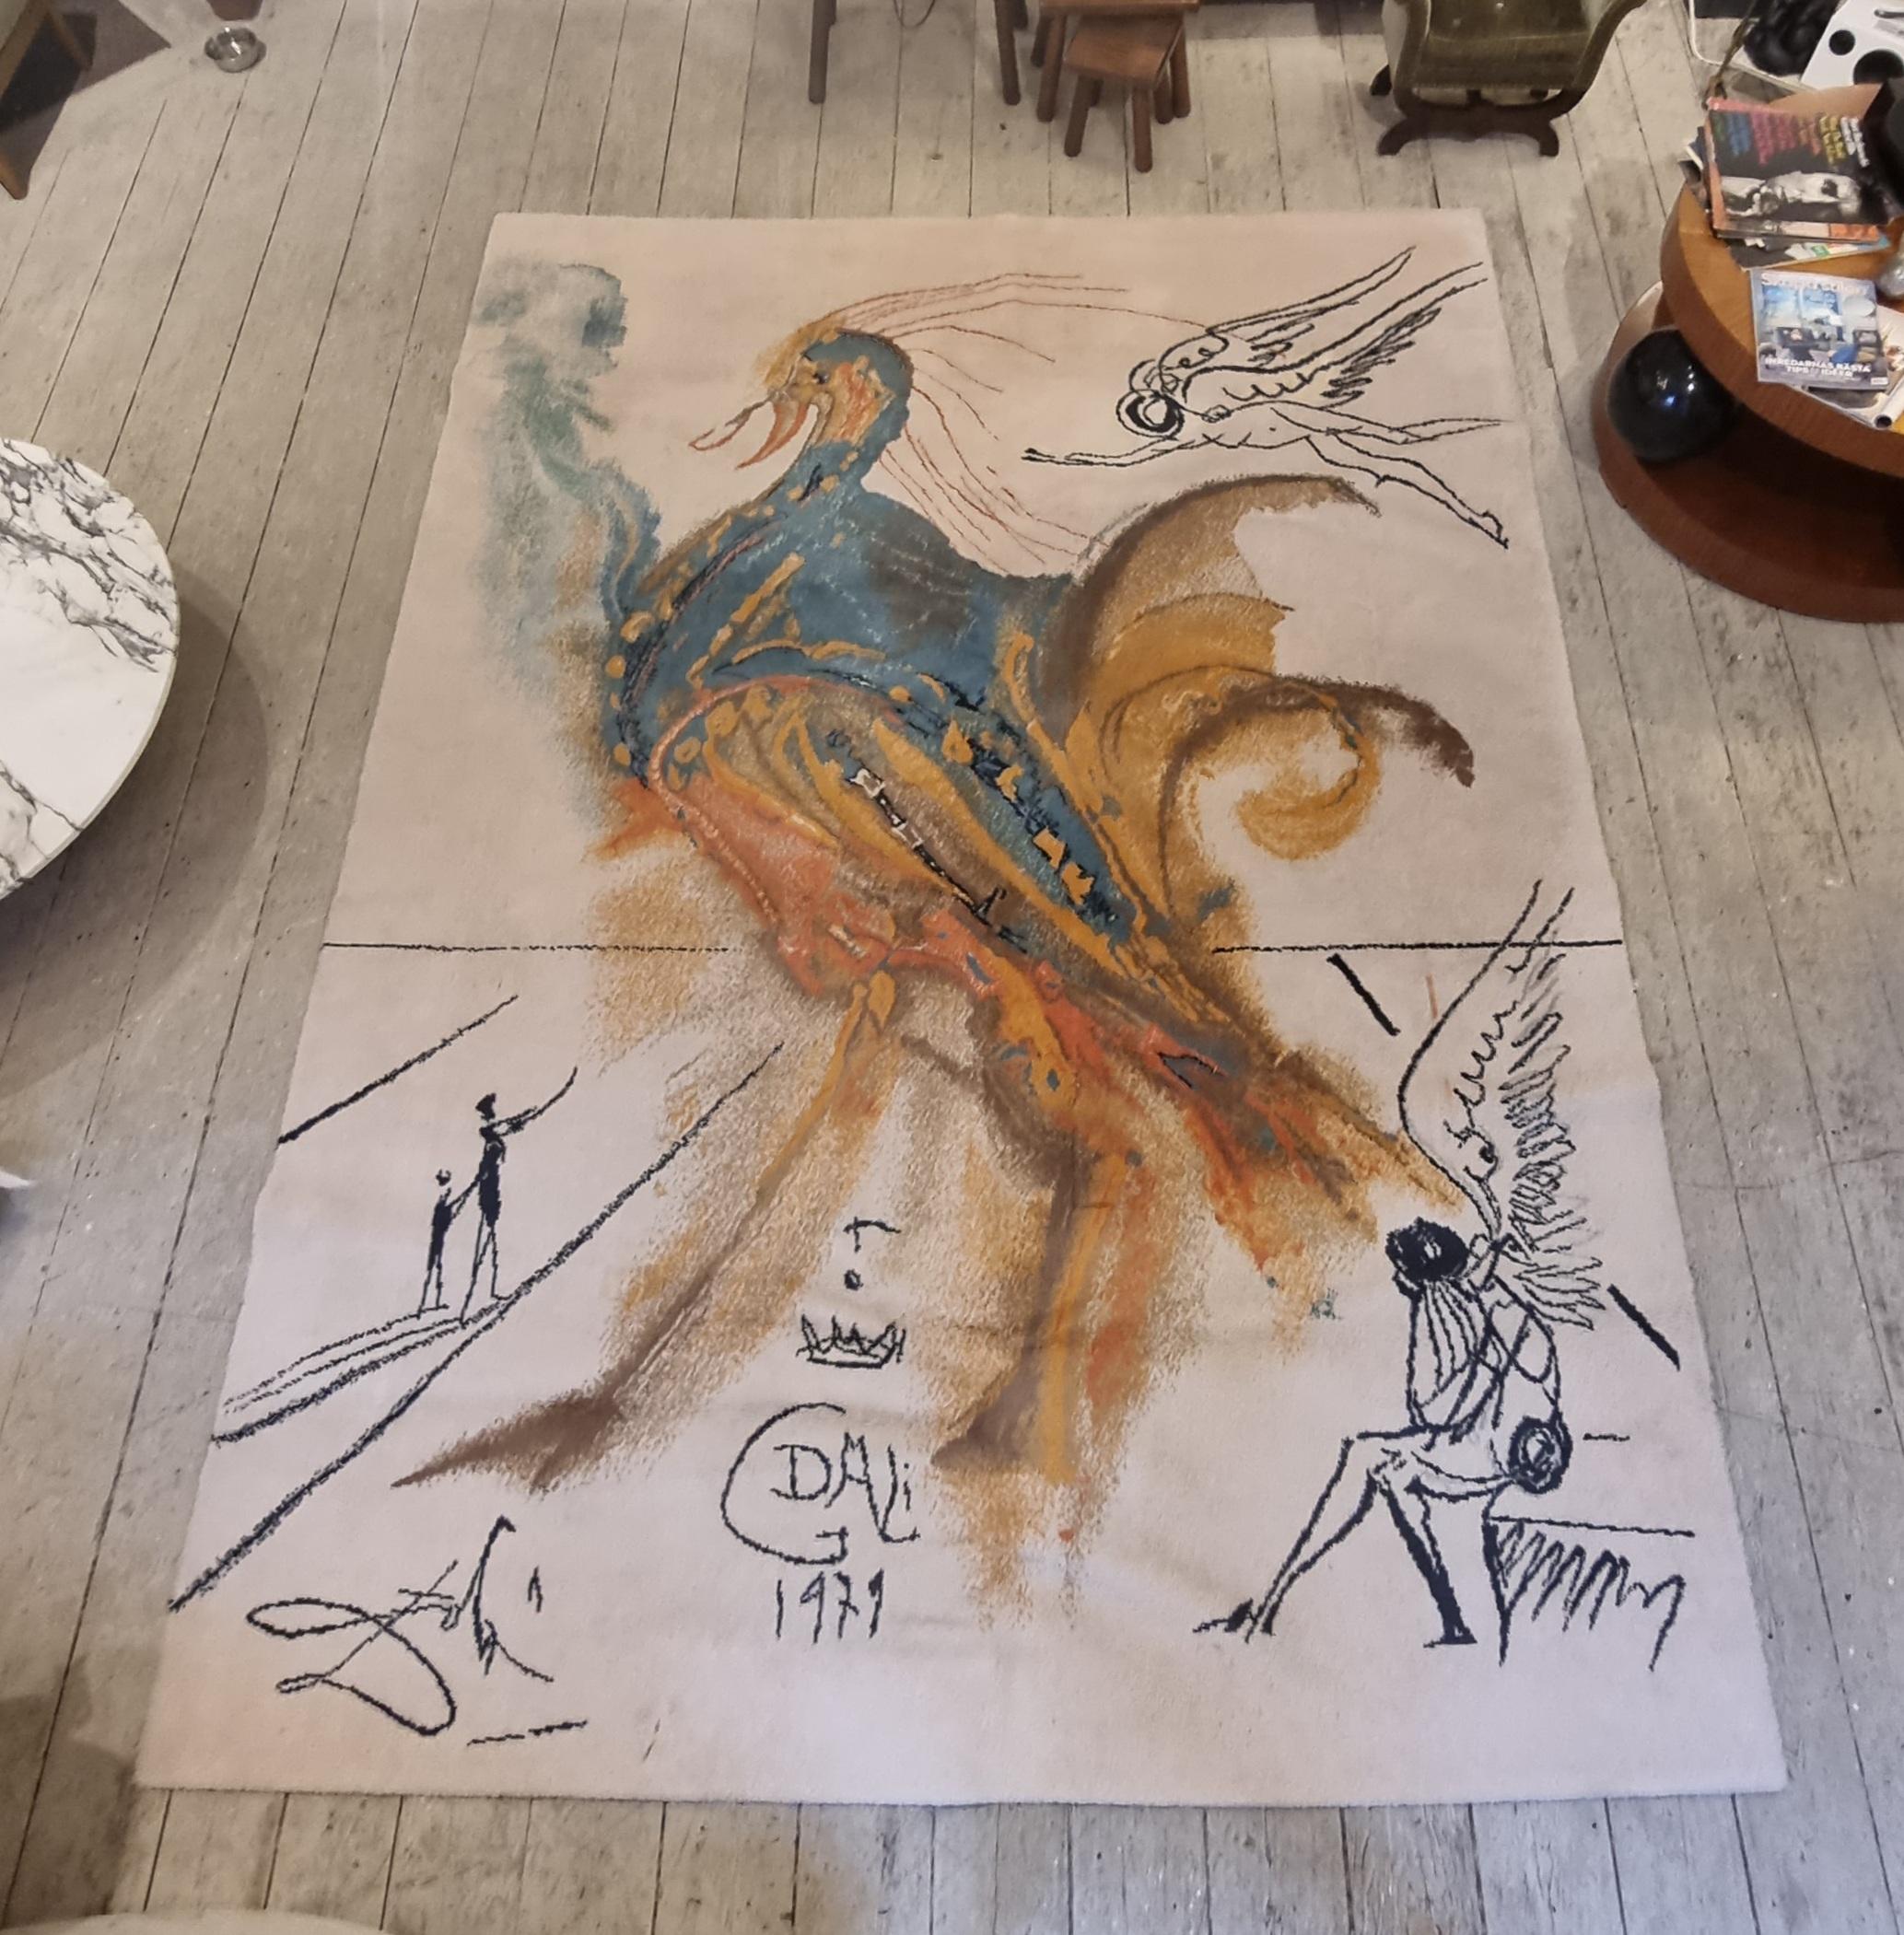 Un rare et merveilleux tapis 100% laine, de la 20th Century Masters Collection, fabriqué au Danemark par Ege Art Line, d'après des dessins de nos artistes les plus renommés. Ce dessin est l'œuvre de Salvador Dalí (Espagne, 1904-1989),  